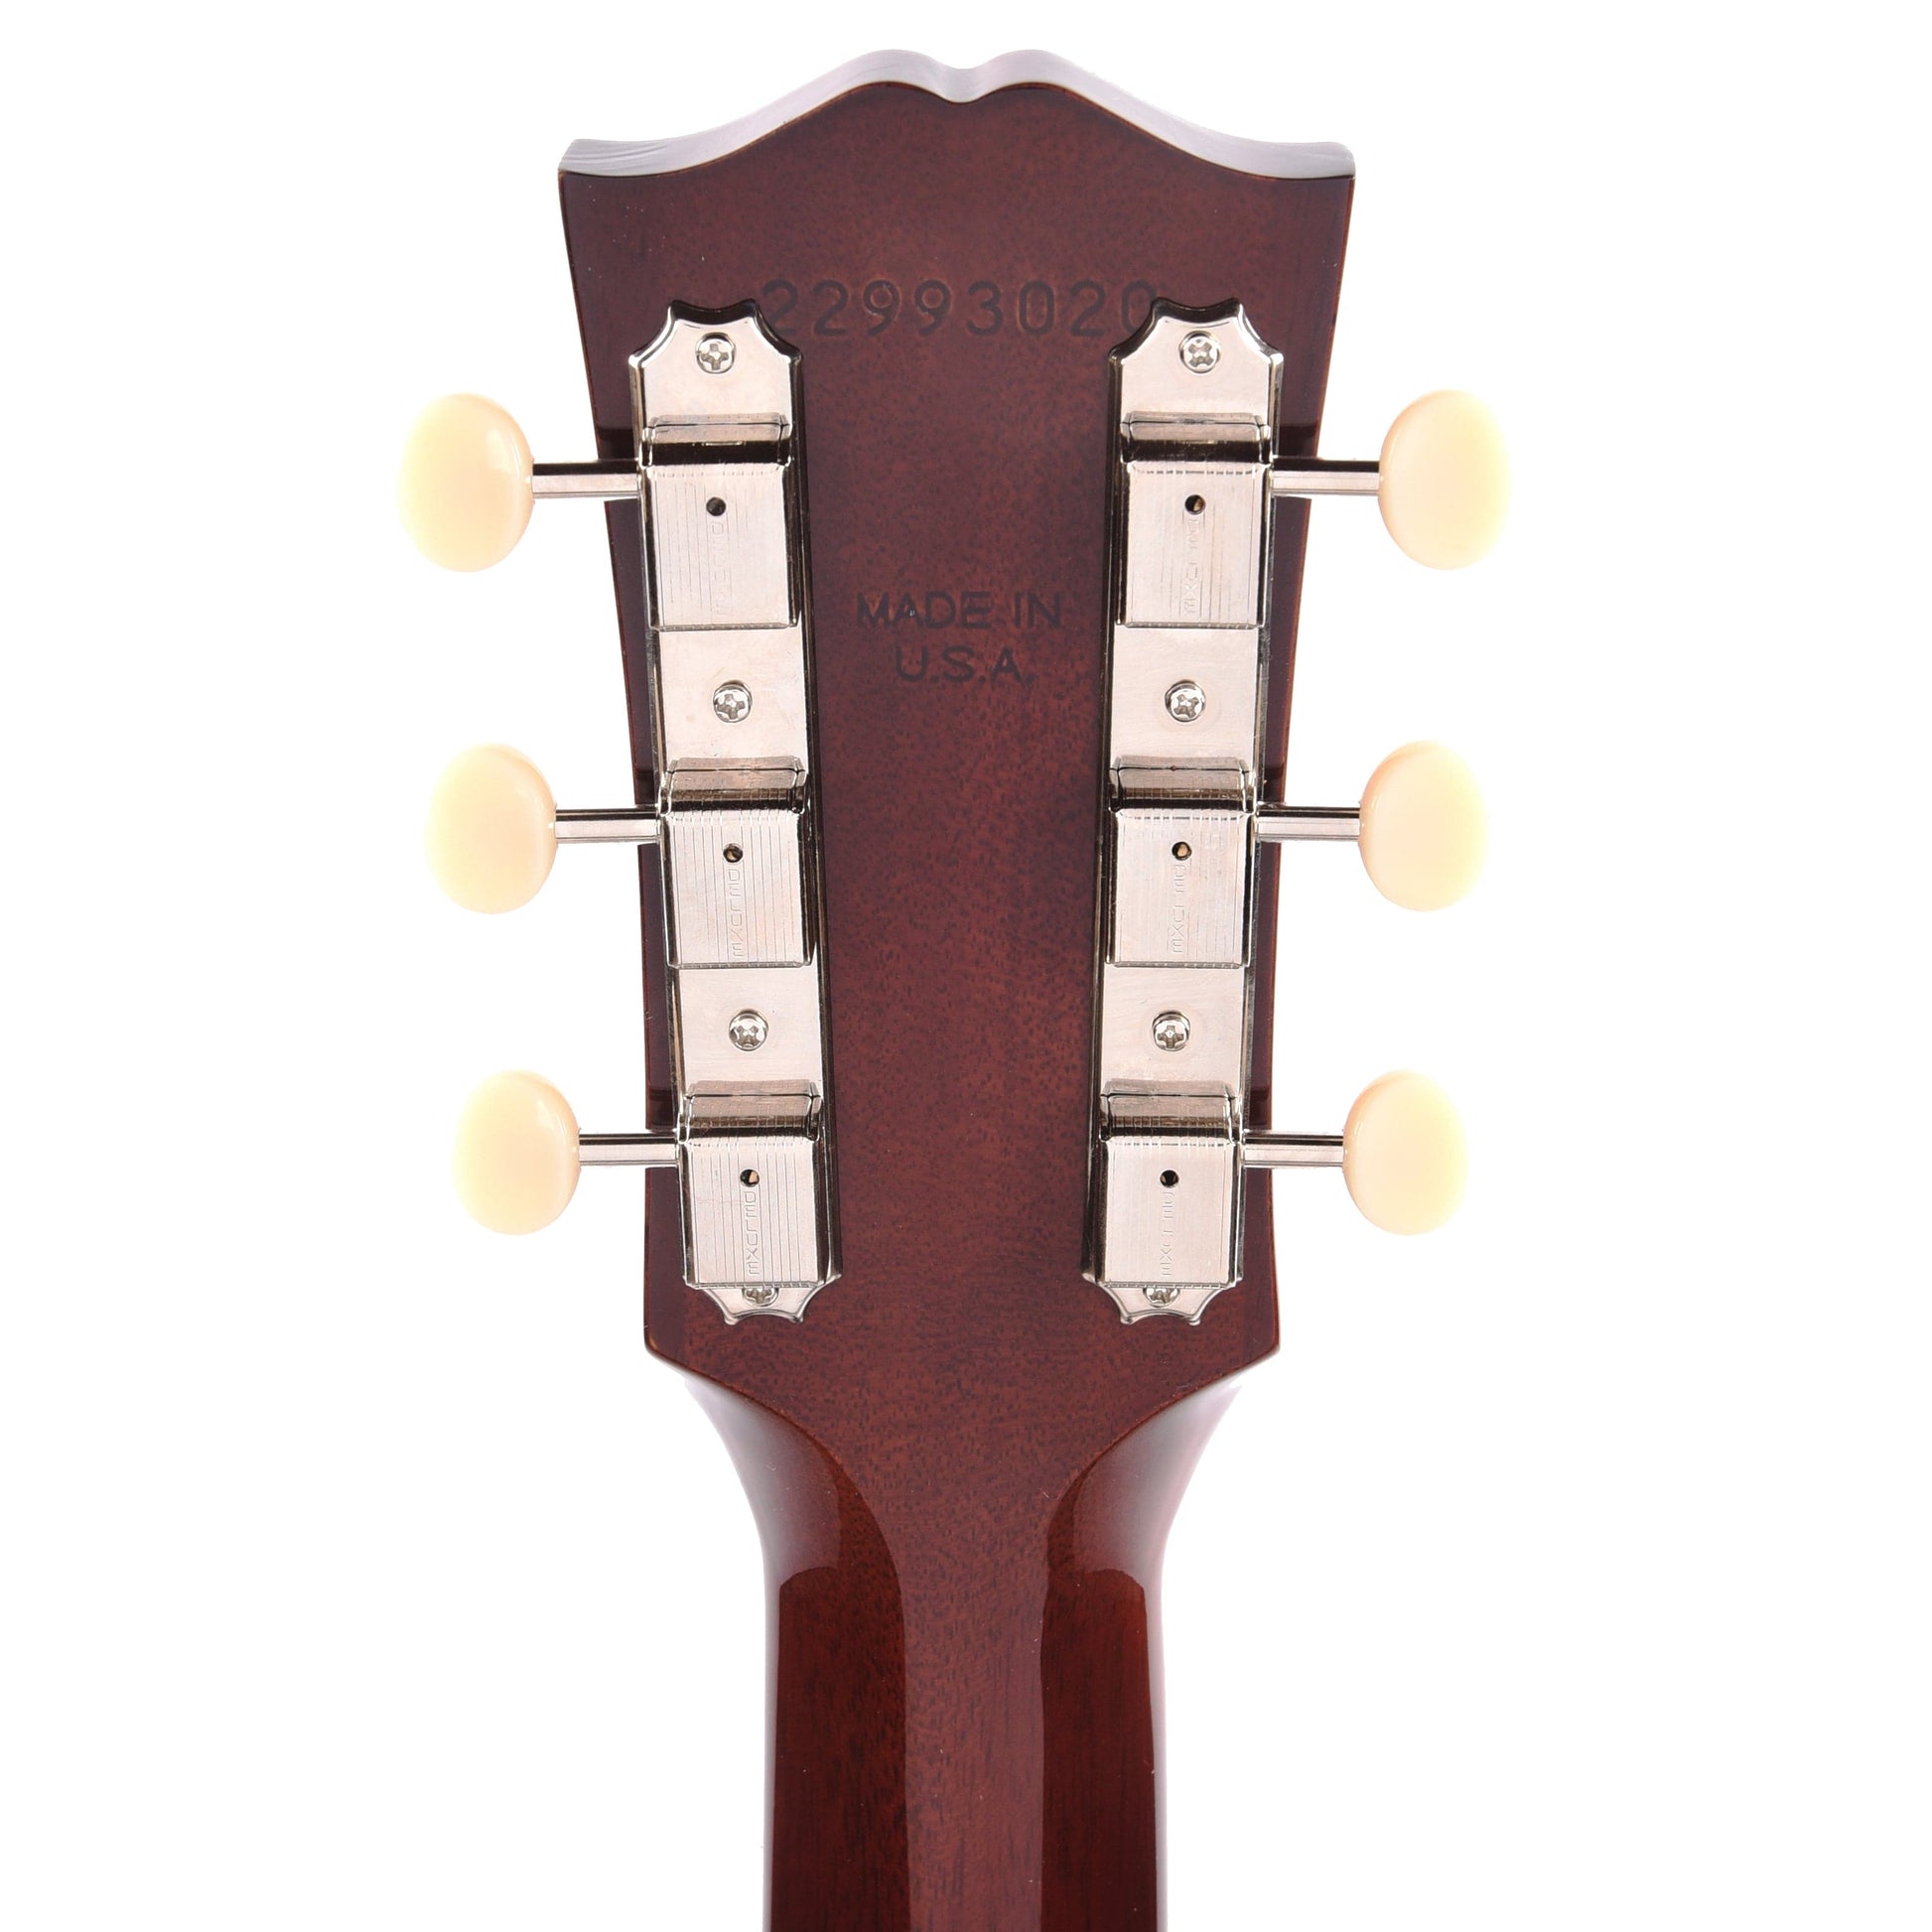 Gibson Original '50s J-45 Original Vintage Sunburst Acoustic Guitars / Dreadnought